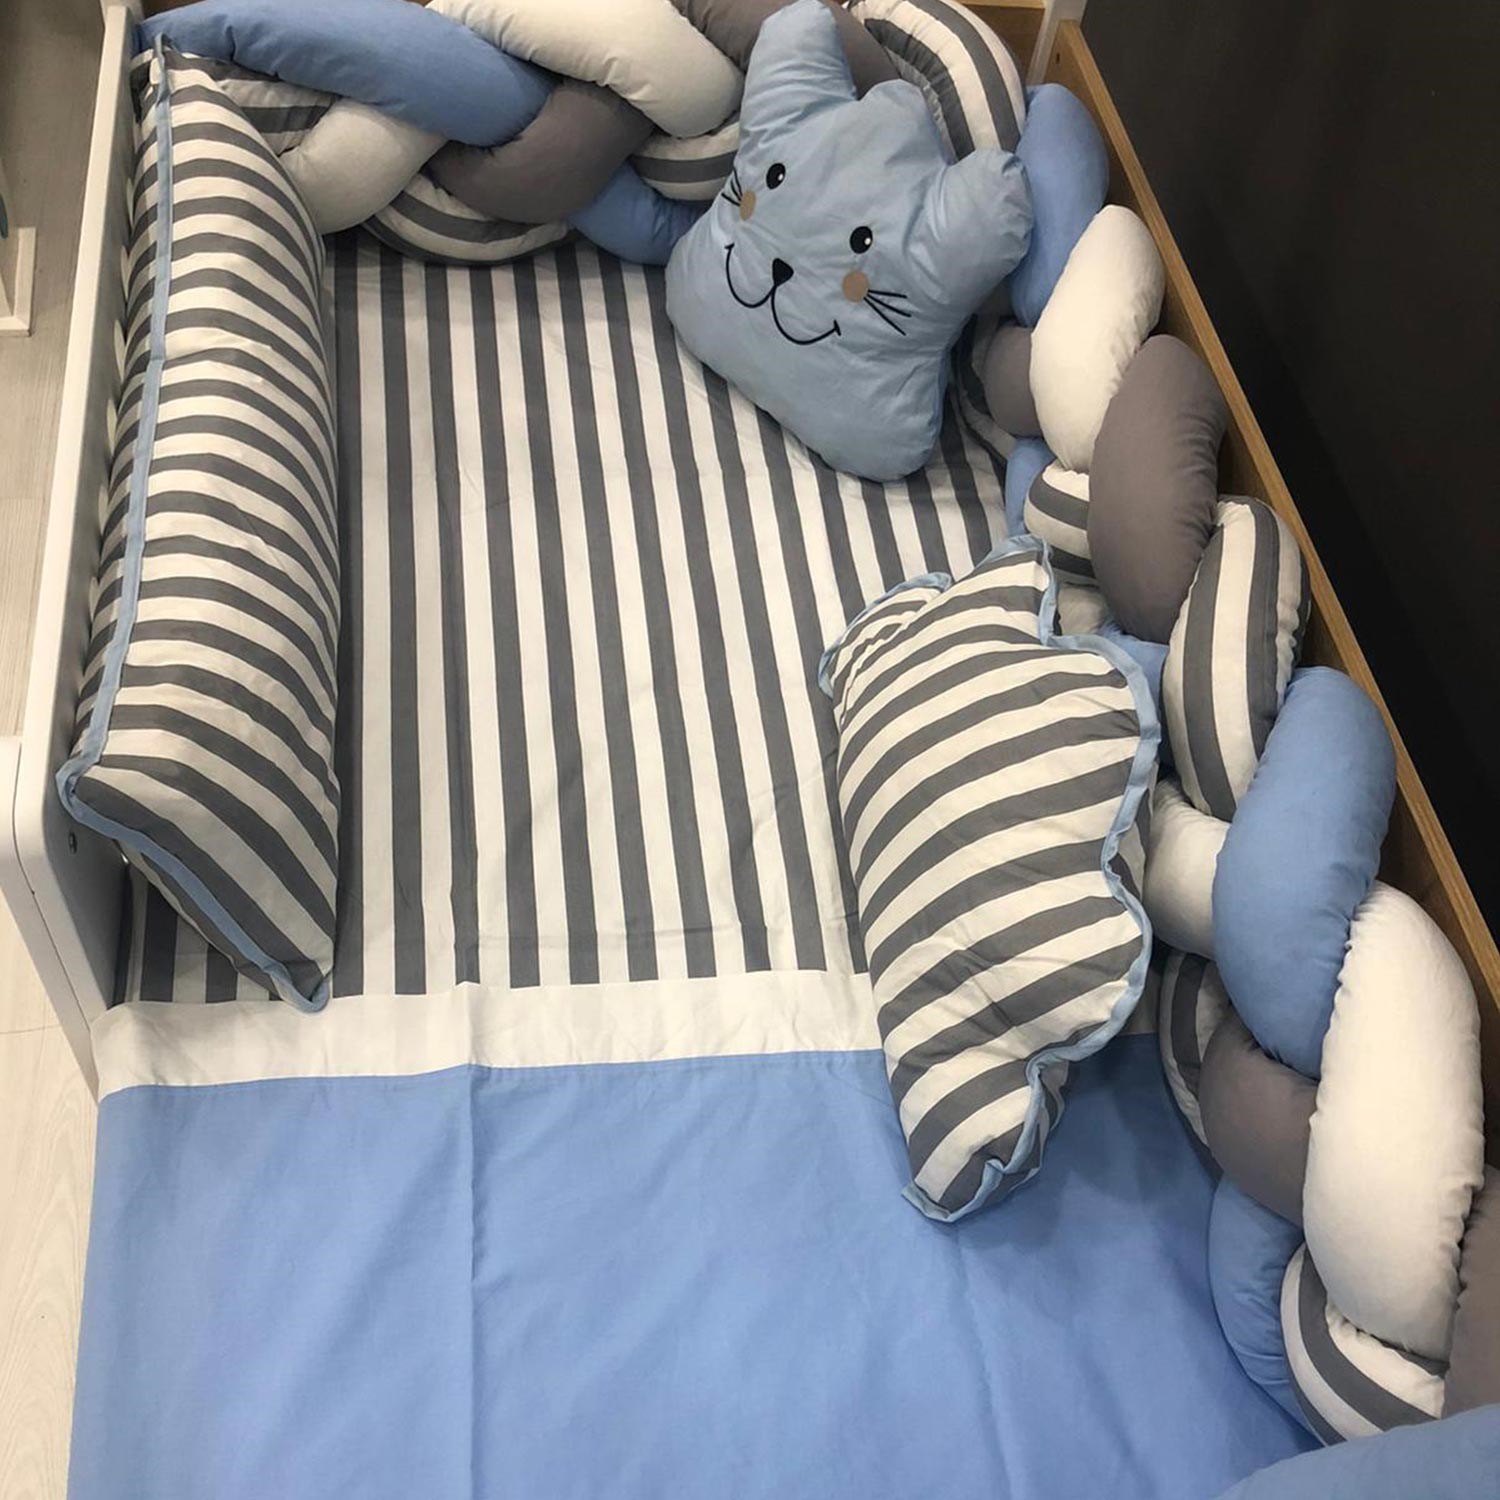 Mini Baby Örgülü Uyku Seti 100x200 cm Mavi